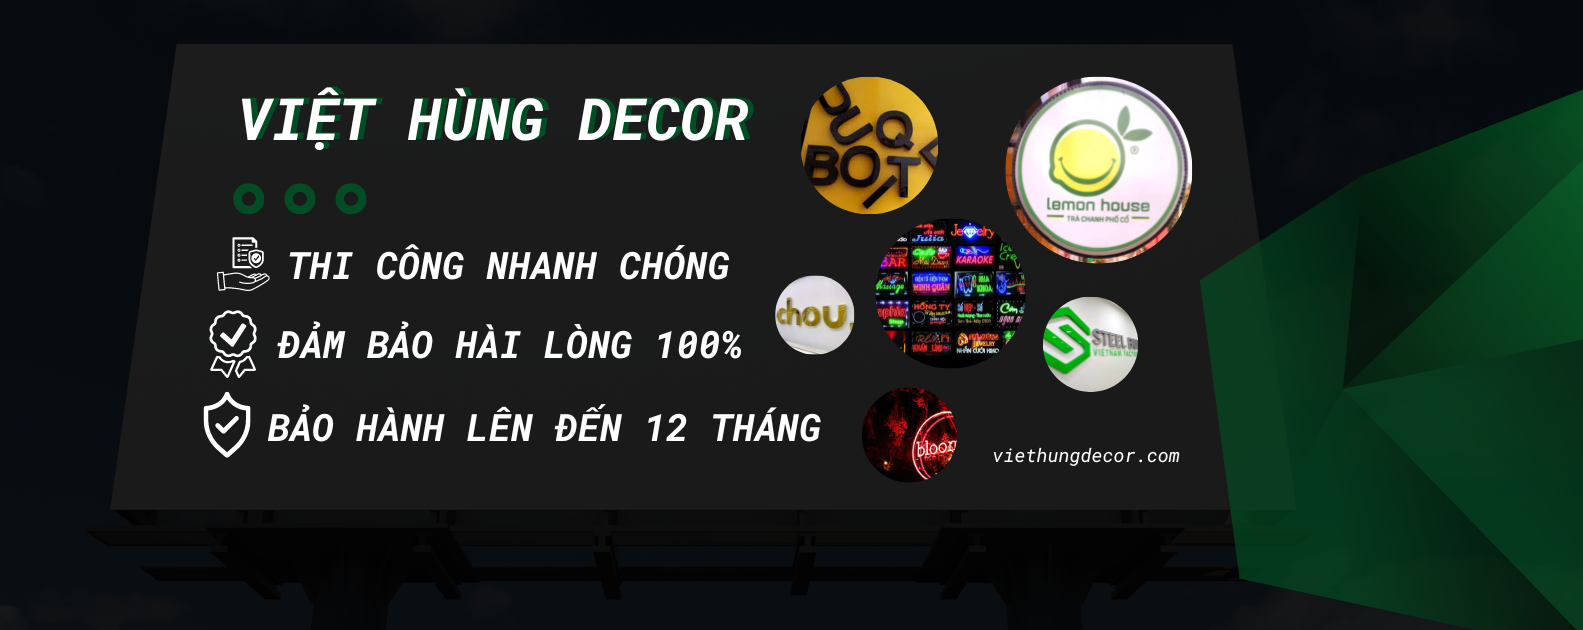 LP T H THNG BNG HIU QUNG CO 2